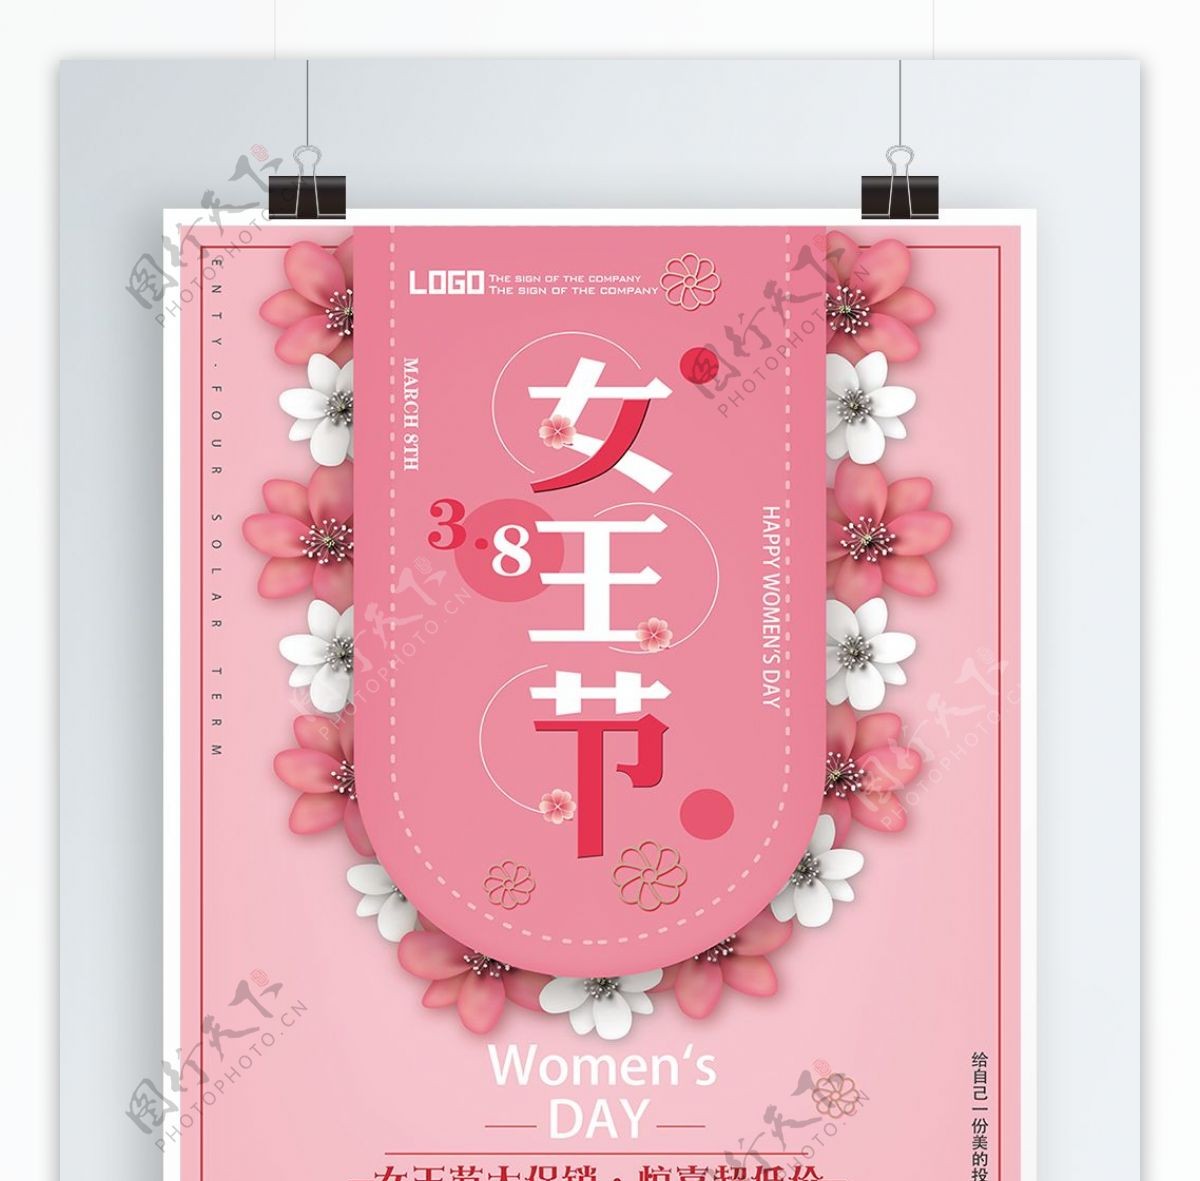 三八妇女节女王节粉色背景促销海报